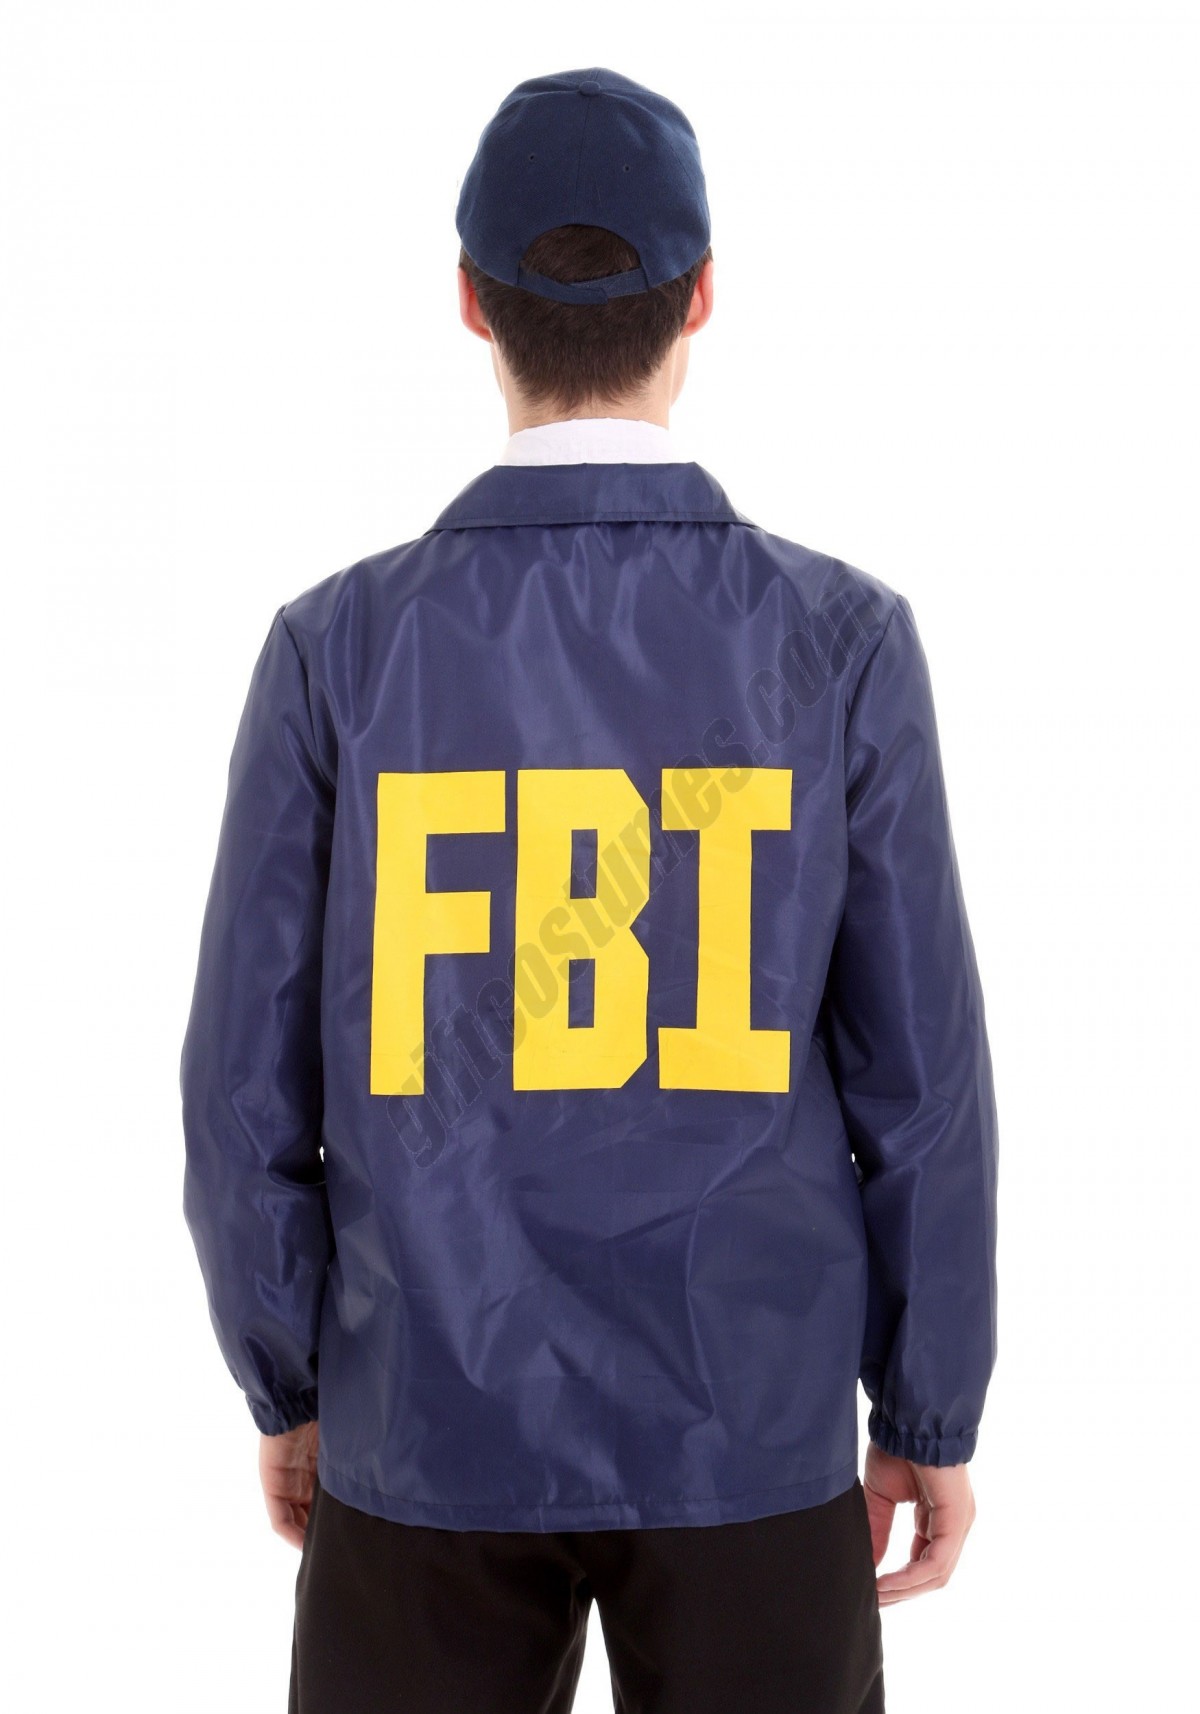 Adult FBI Costume - Men's - -1